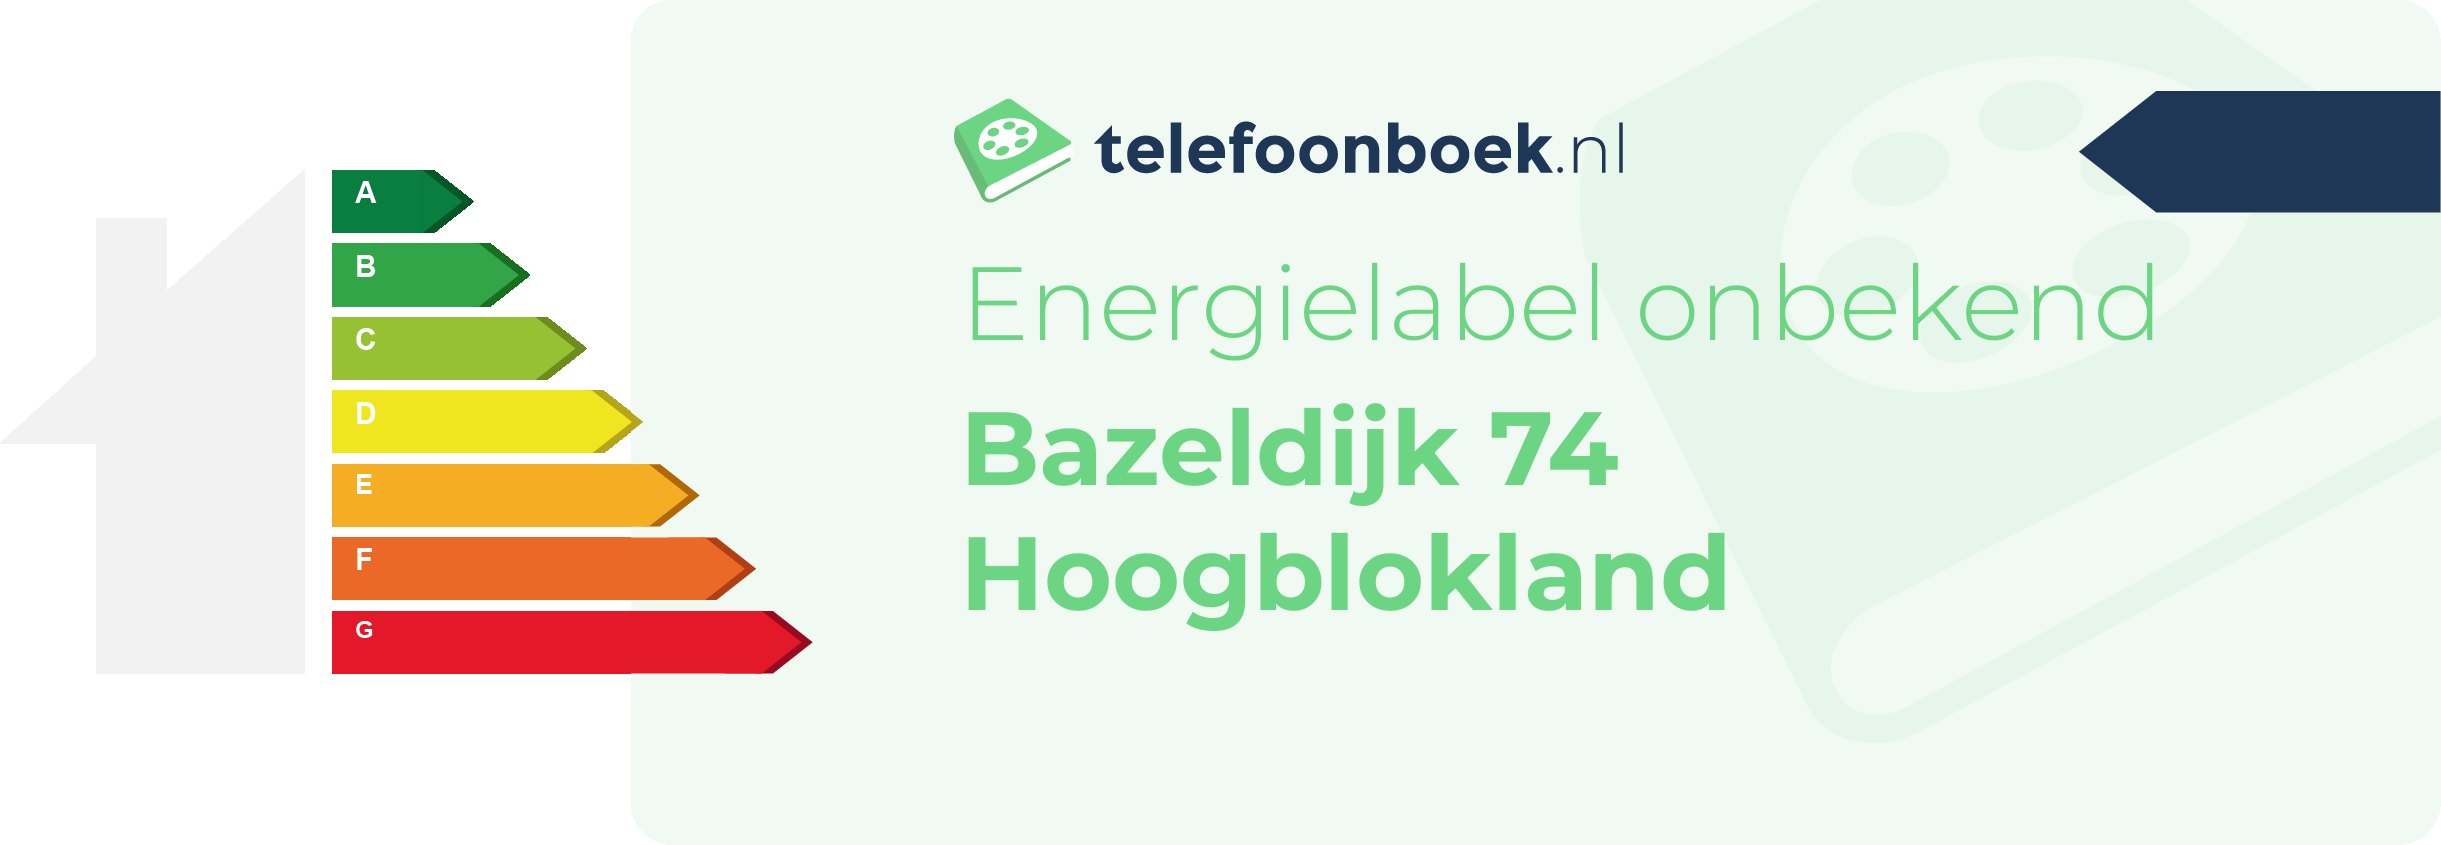 Energielabel Bazeldijk 74 Hoogblokland